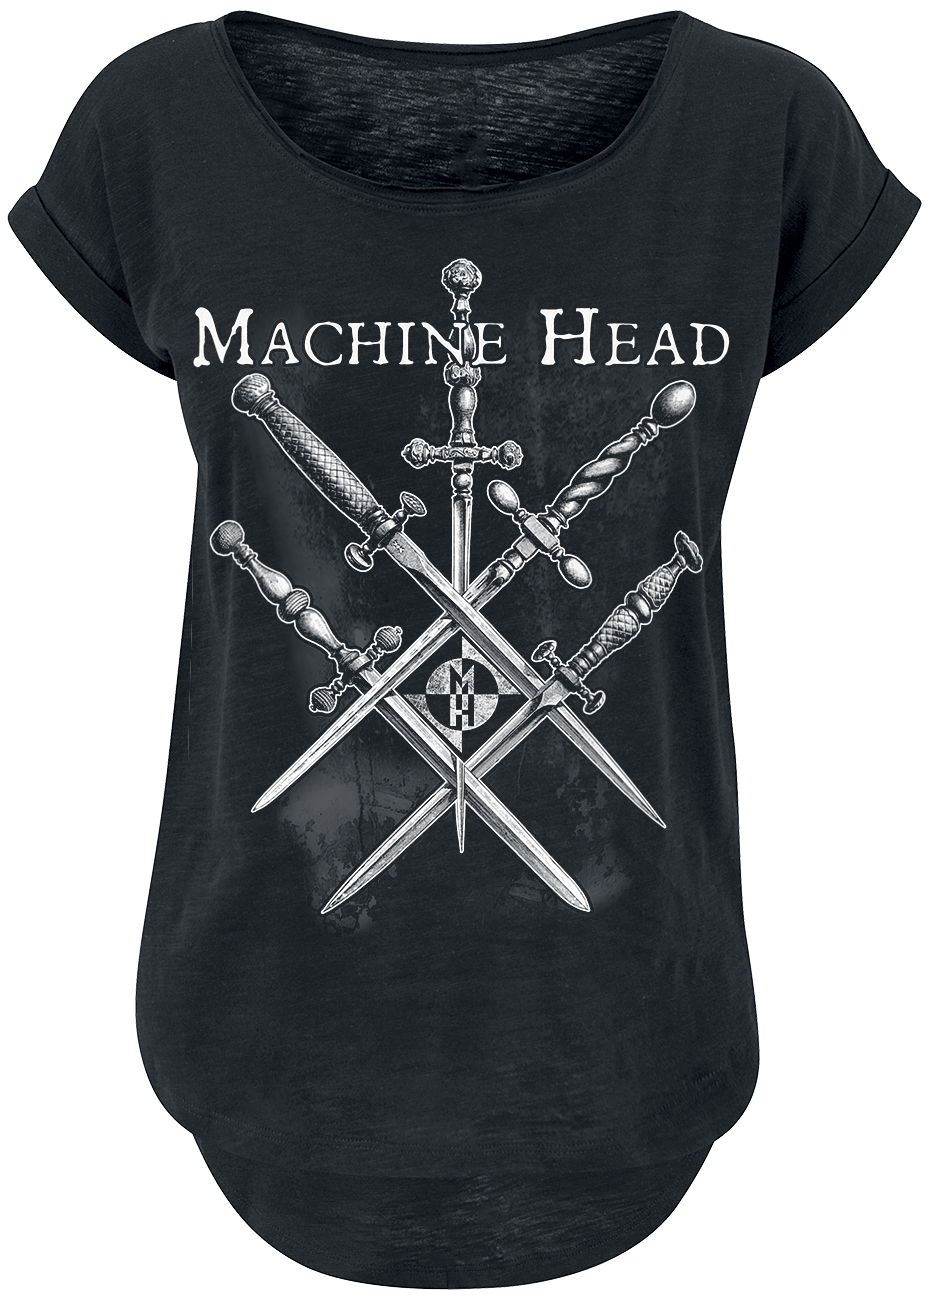 Machine Head - Bury One & All - Girls shirt - black image